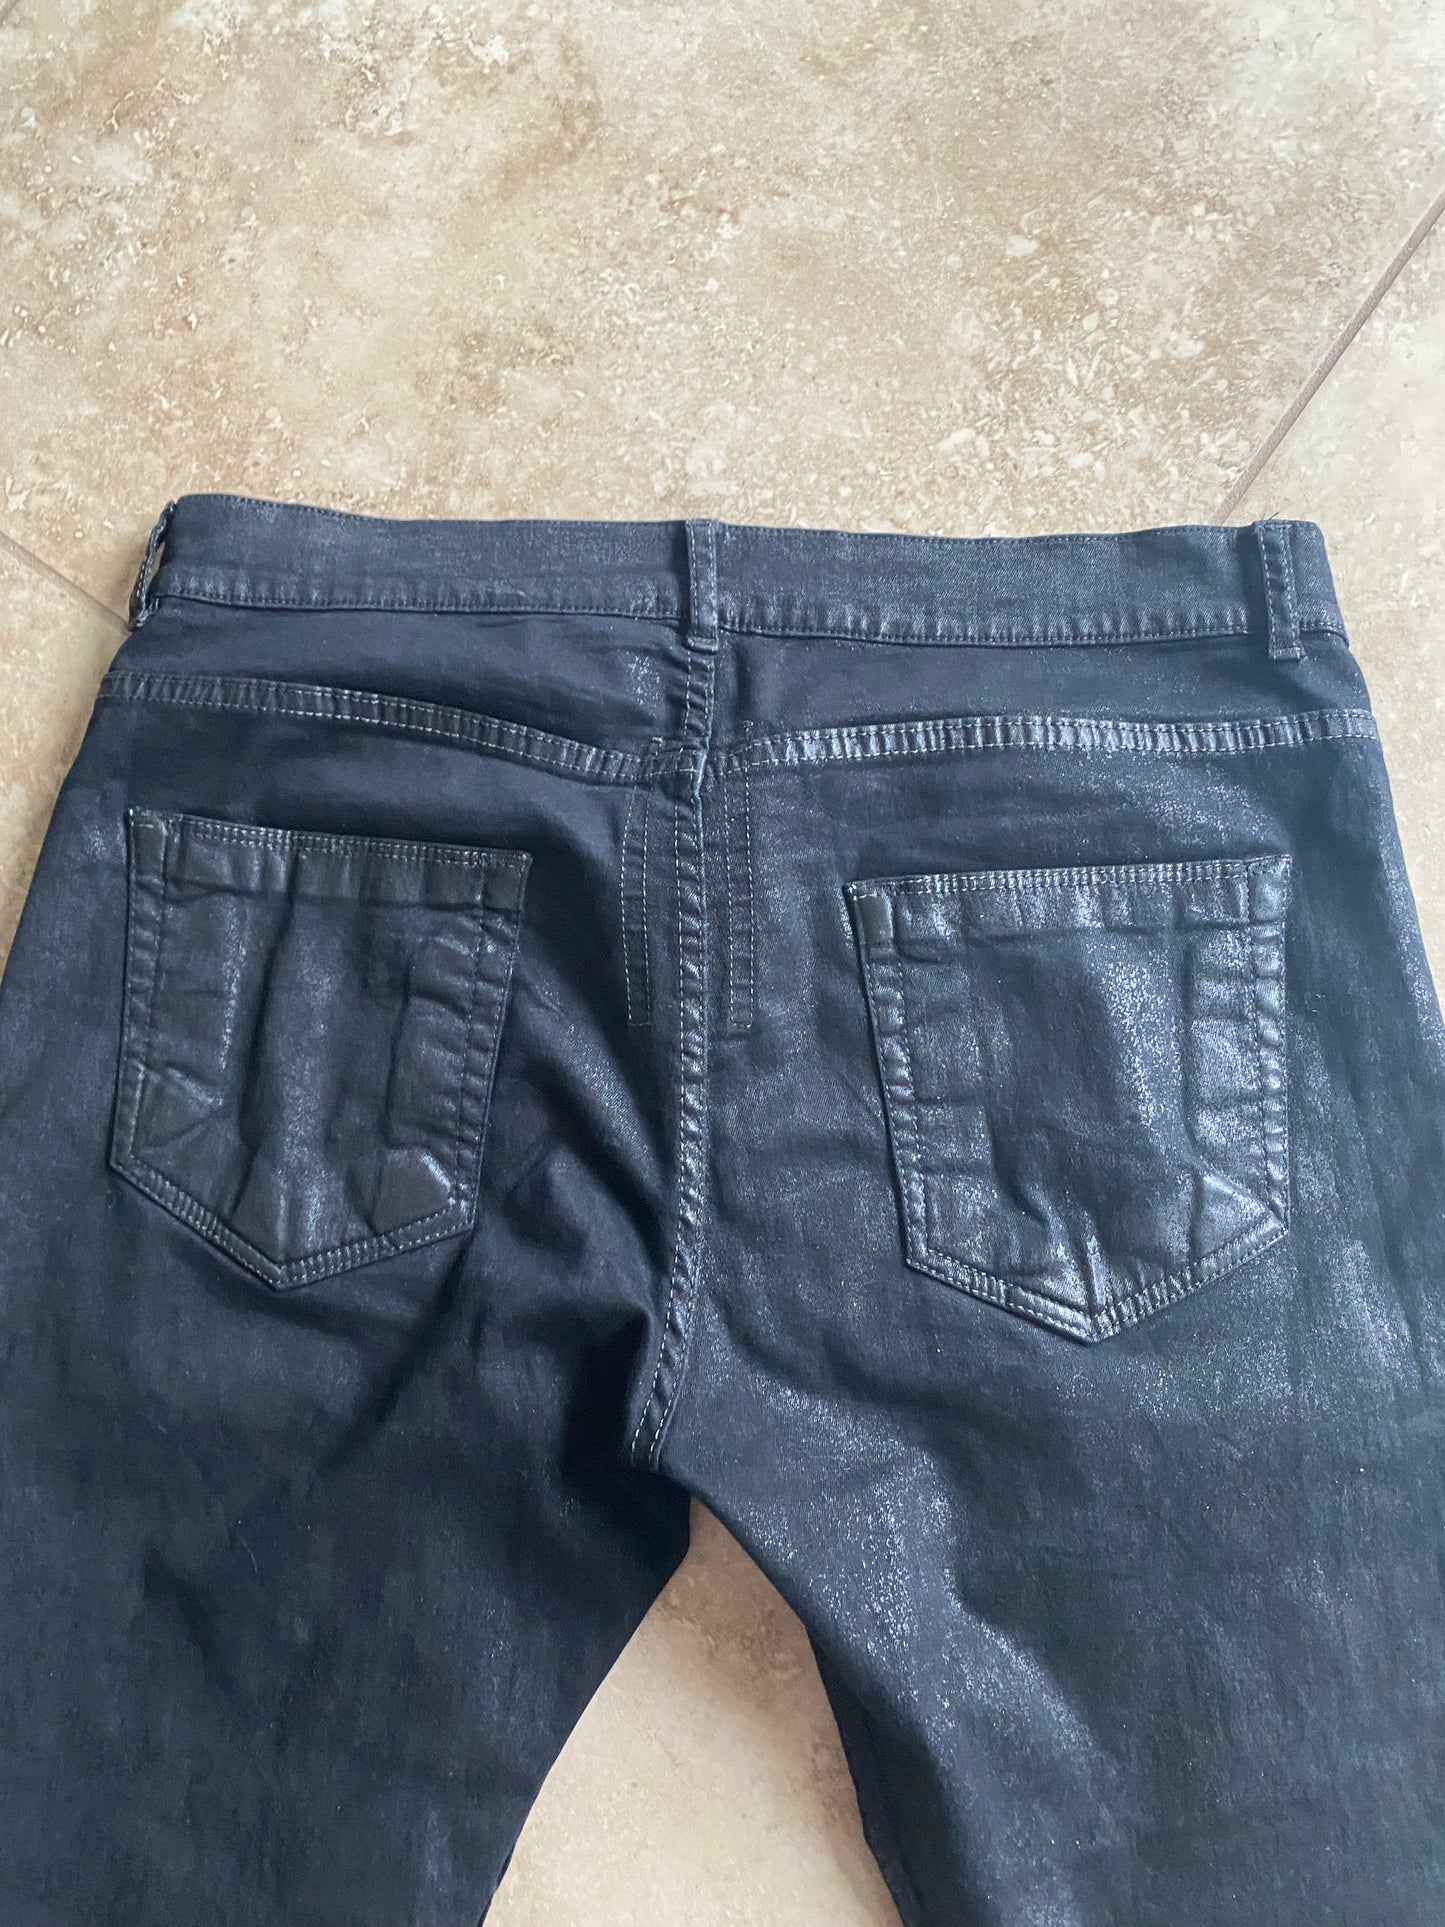 Rick Owens Wax Denim jeans